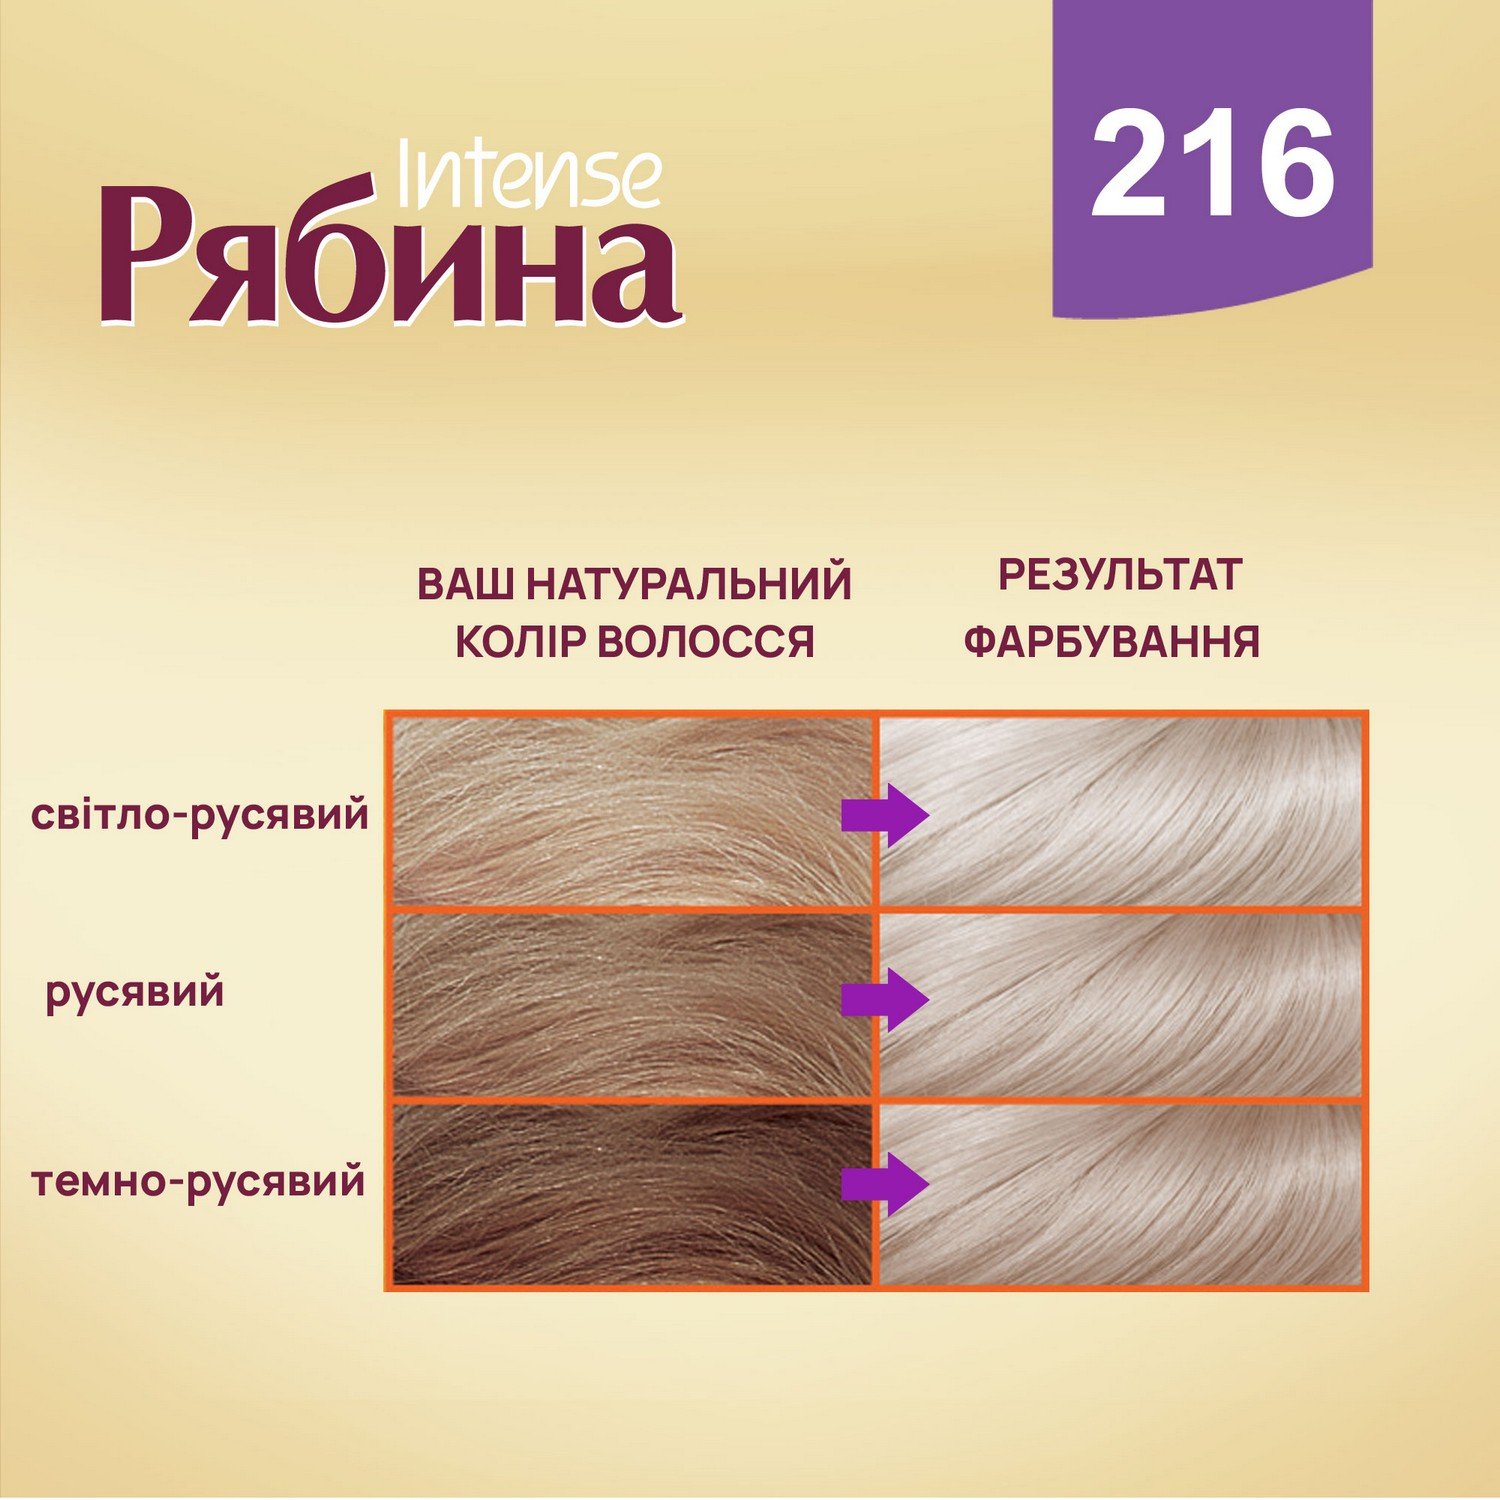 Крем-краска для волос Рябина Intense, оттенок 216 (Пепельный блонд), 138 мл - фото 3